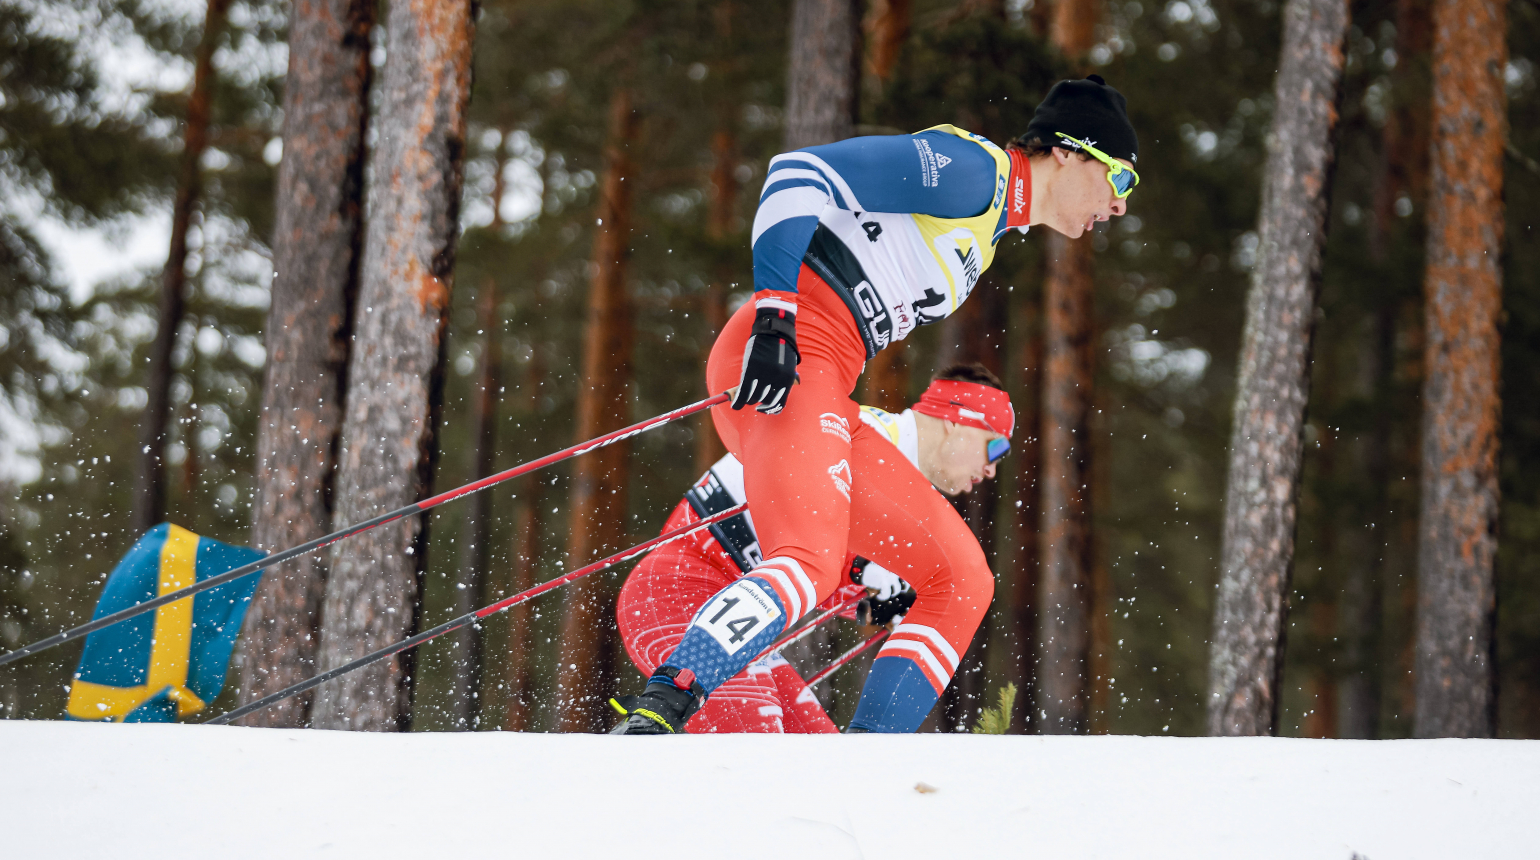 Předposlední zastávka SP běžců na lyžích, Tallinn bude poprvé v historii hostit sprinty